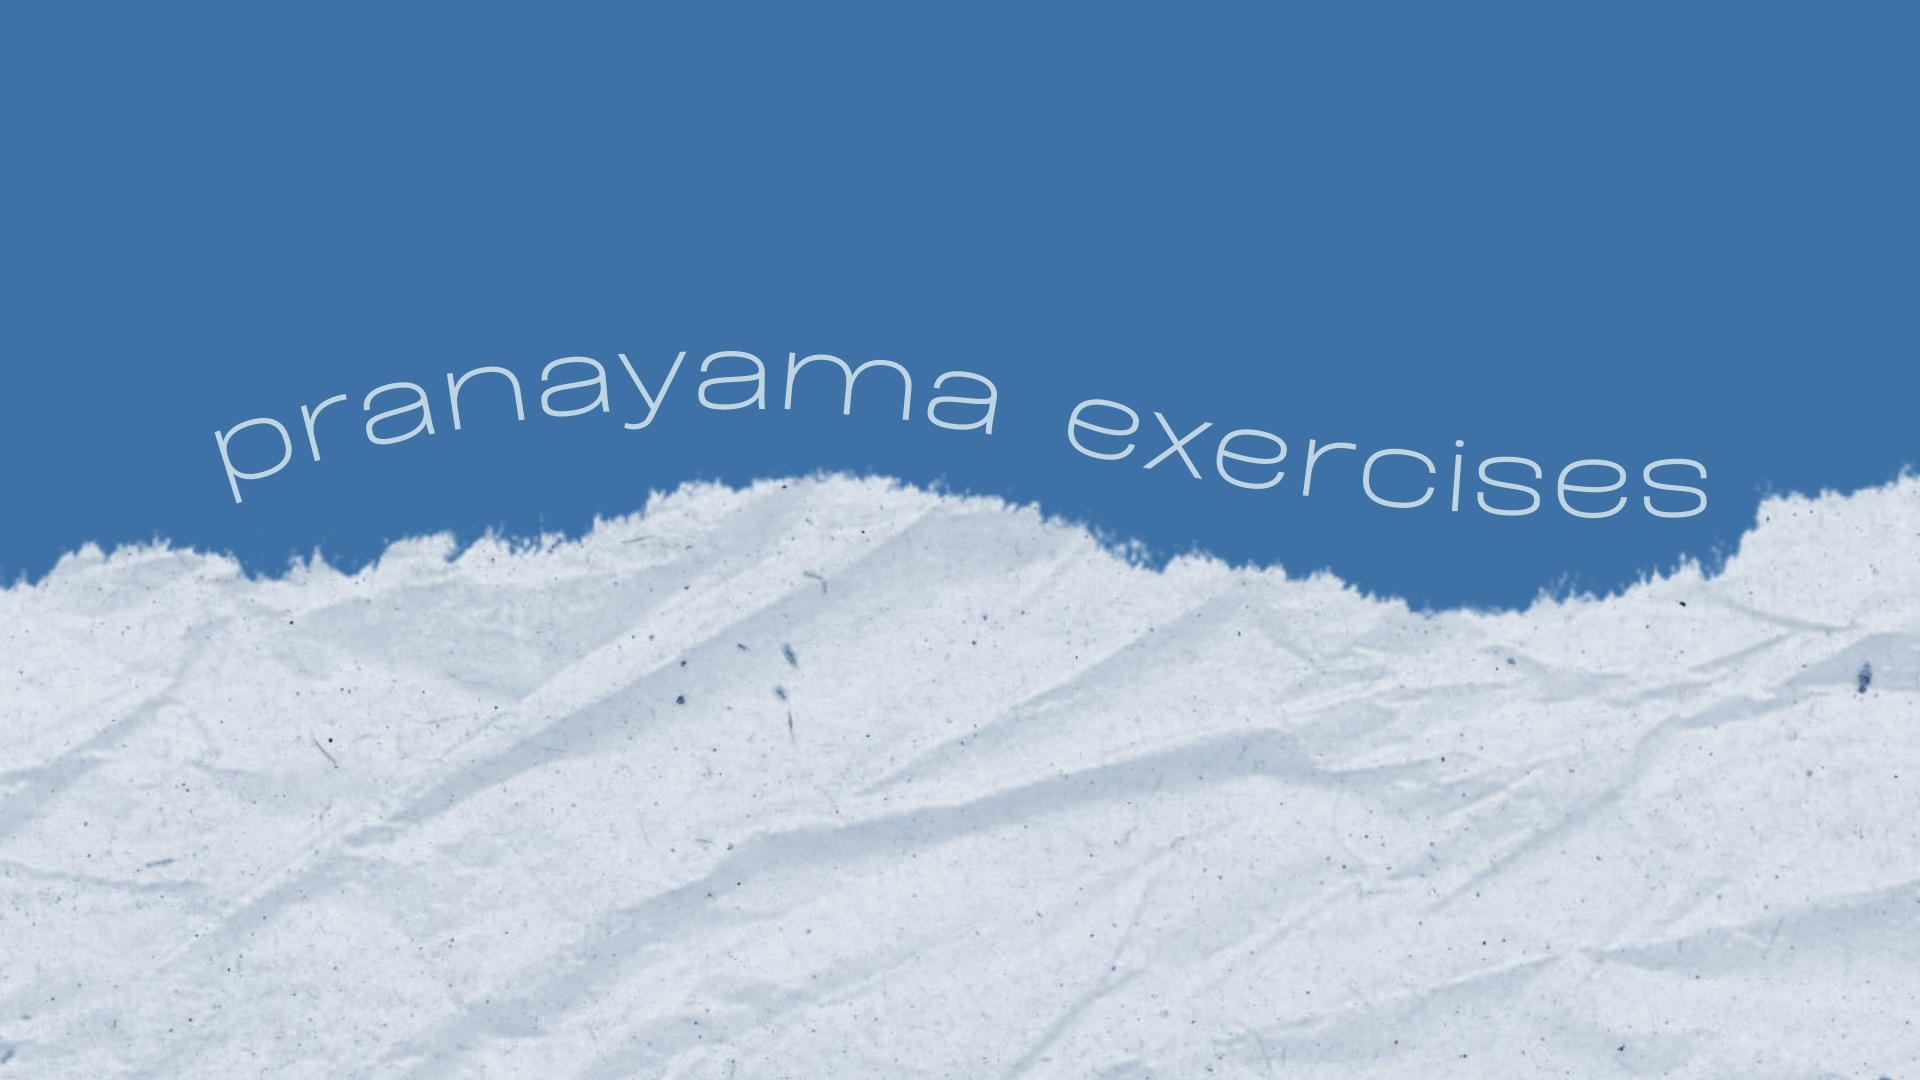 Pranayama Breathing Exercises